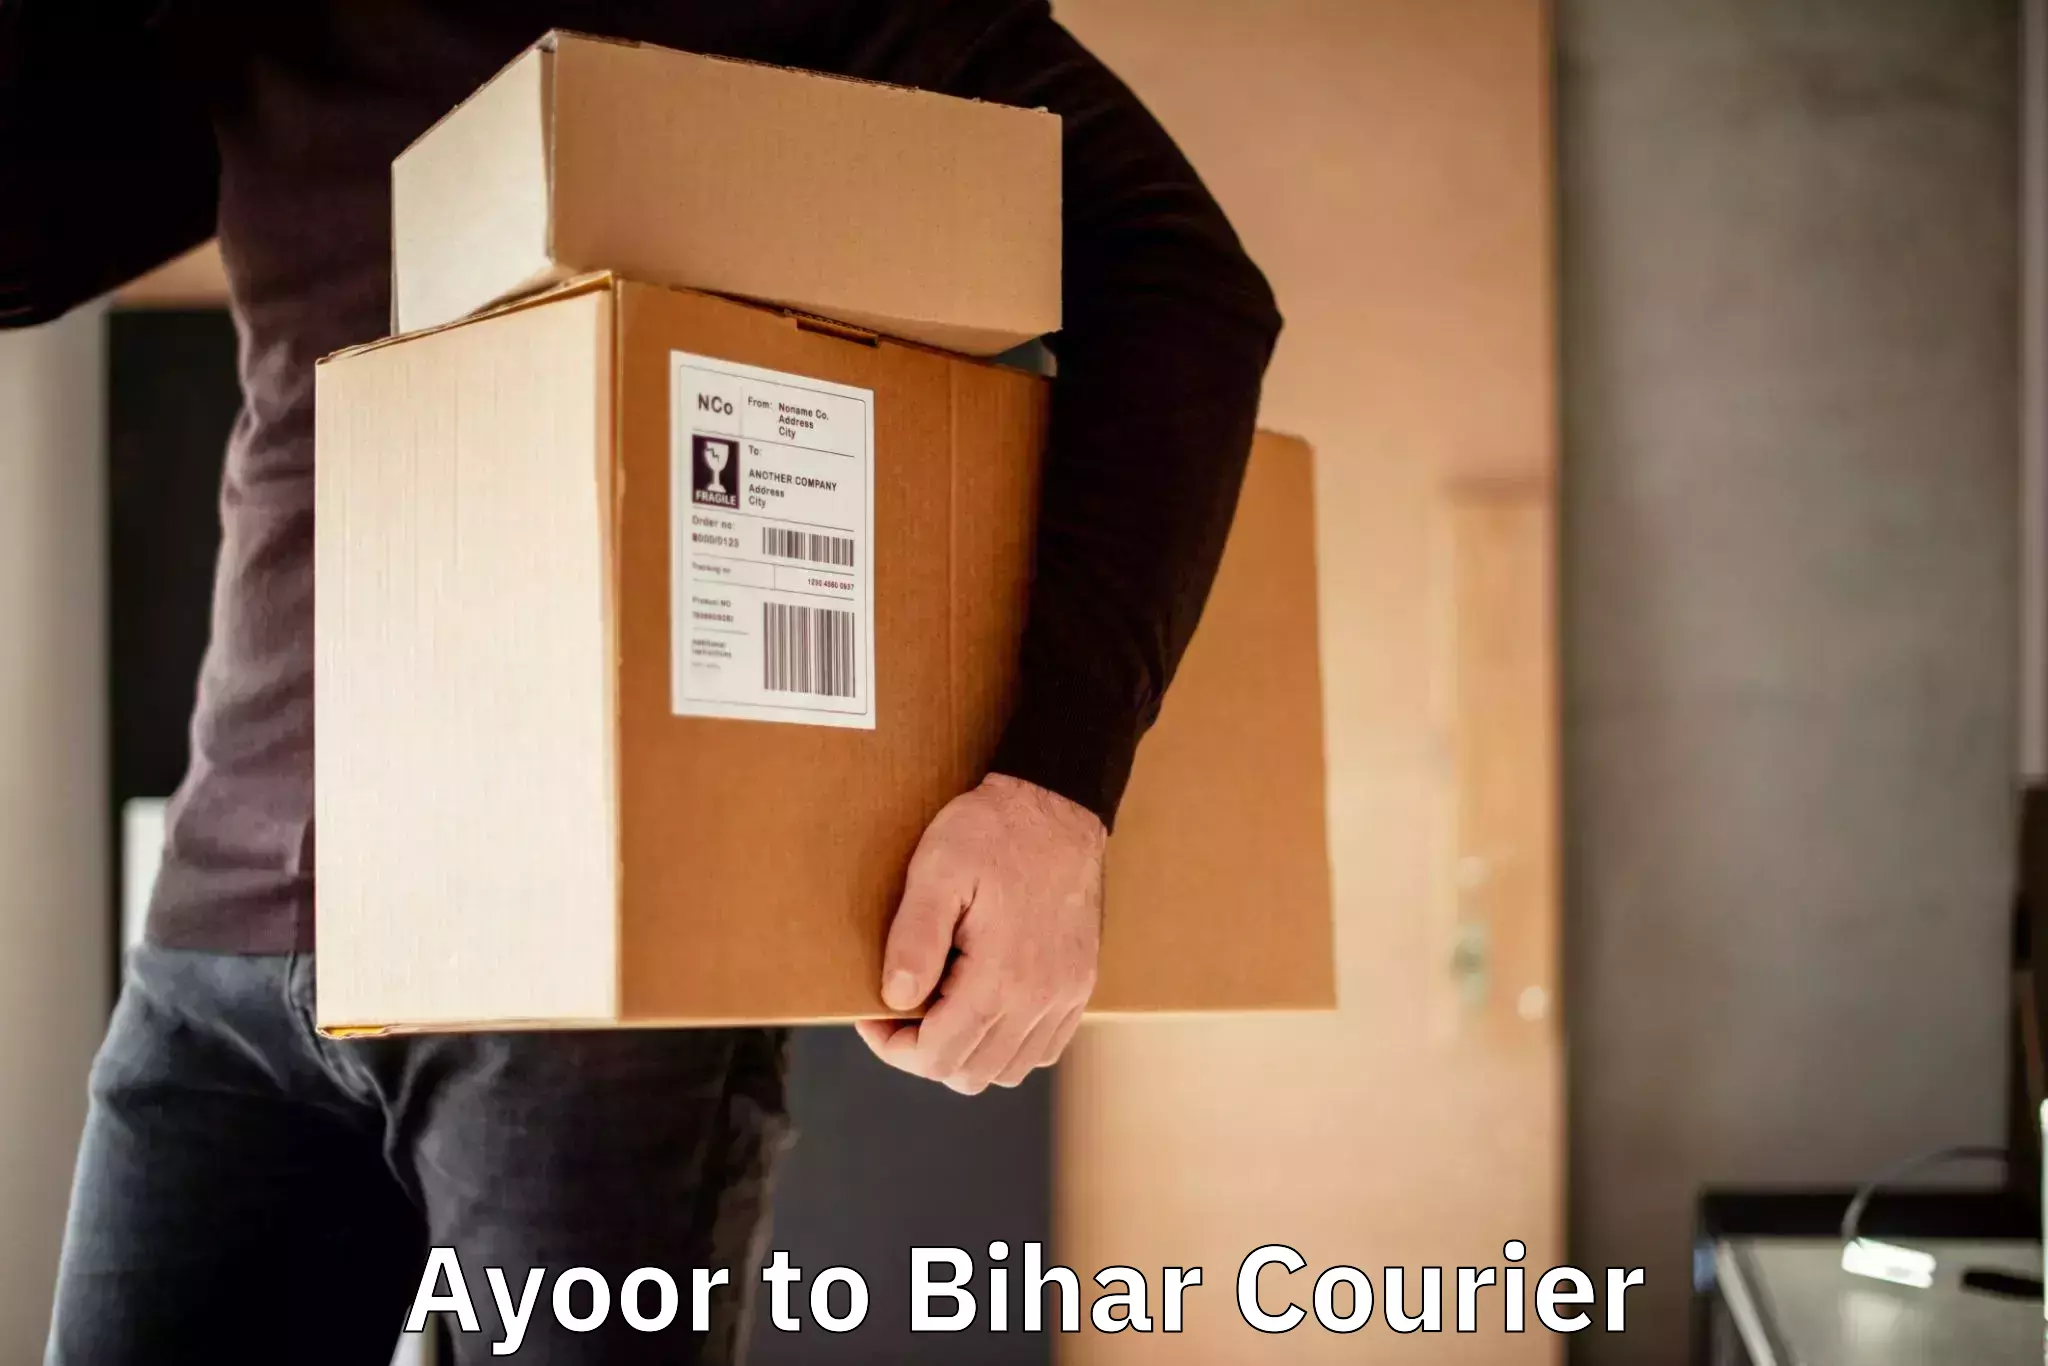 Comprehensive freight services Ayoor to Bihar